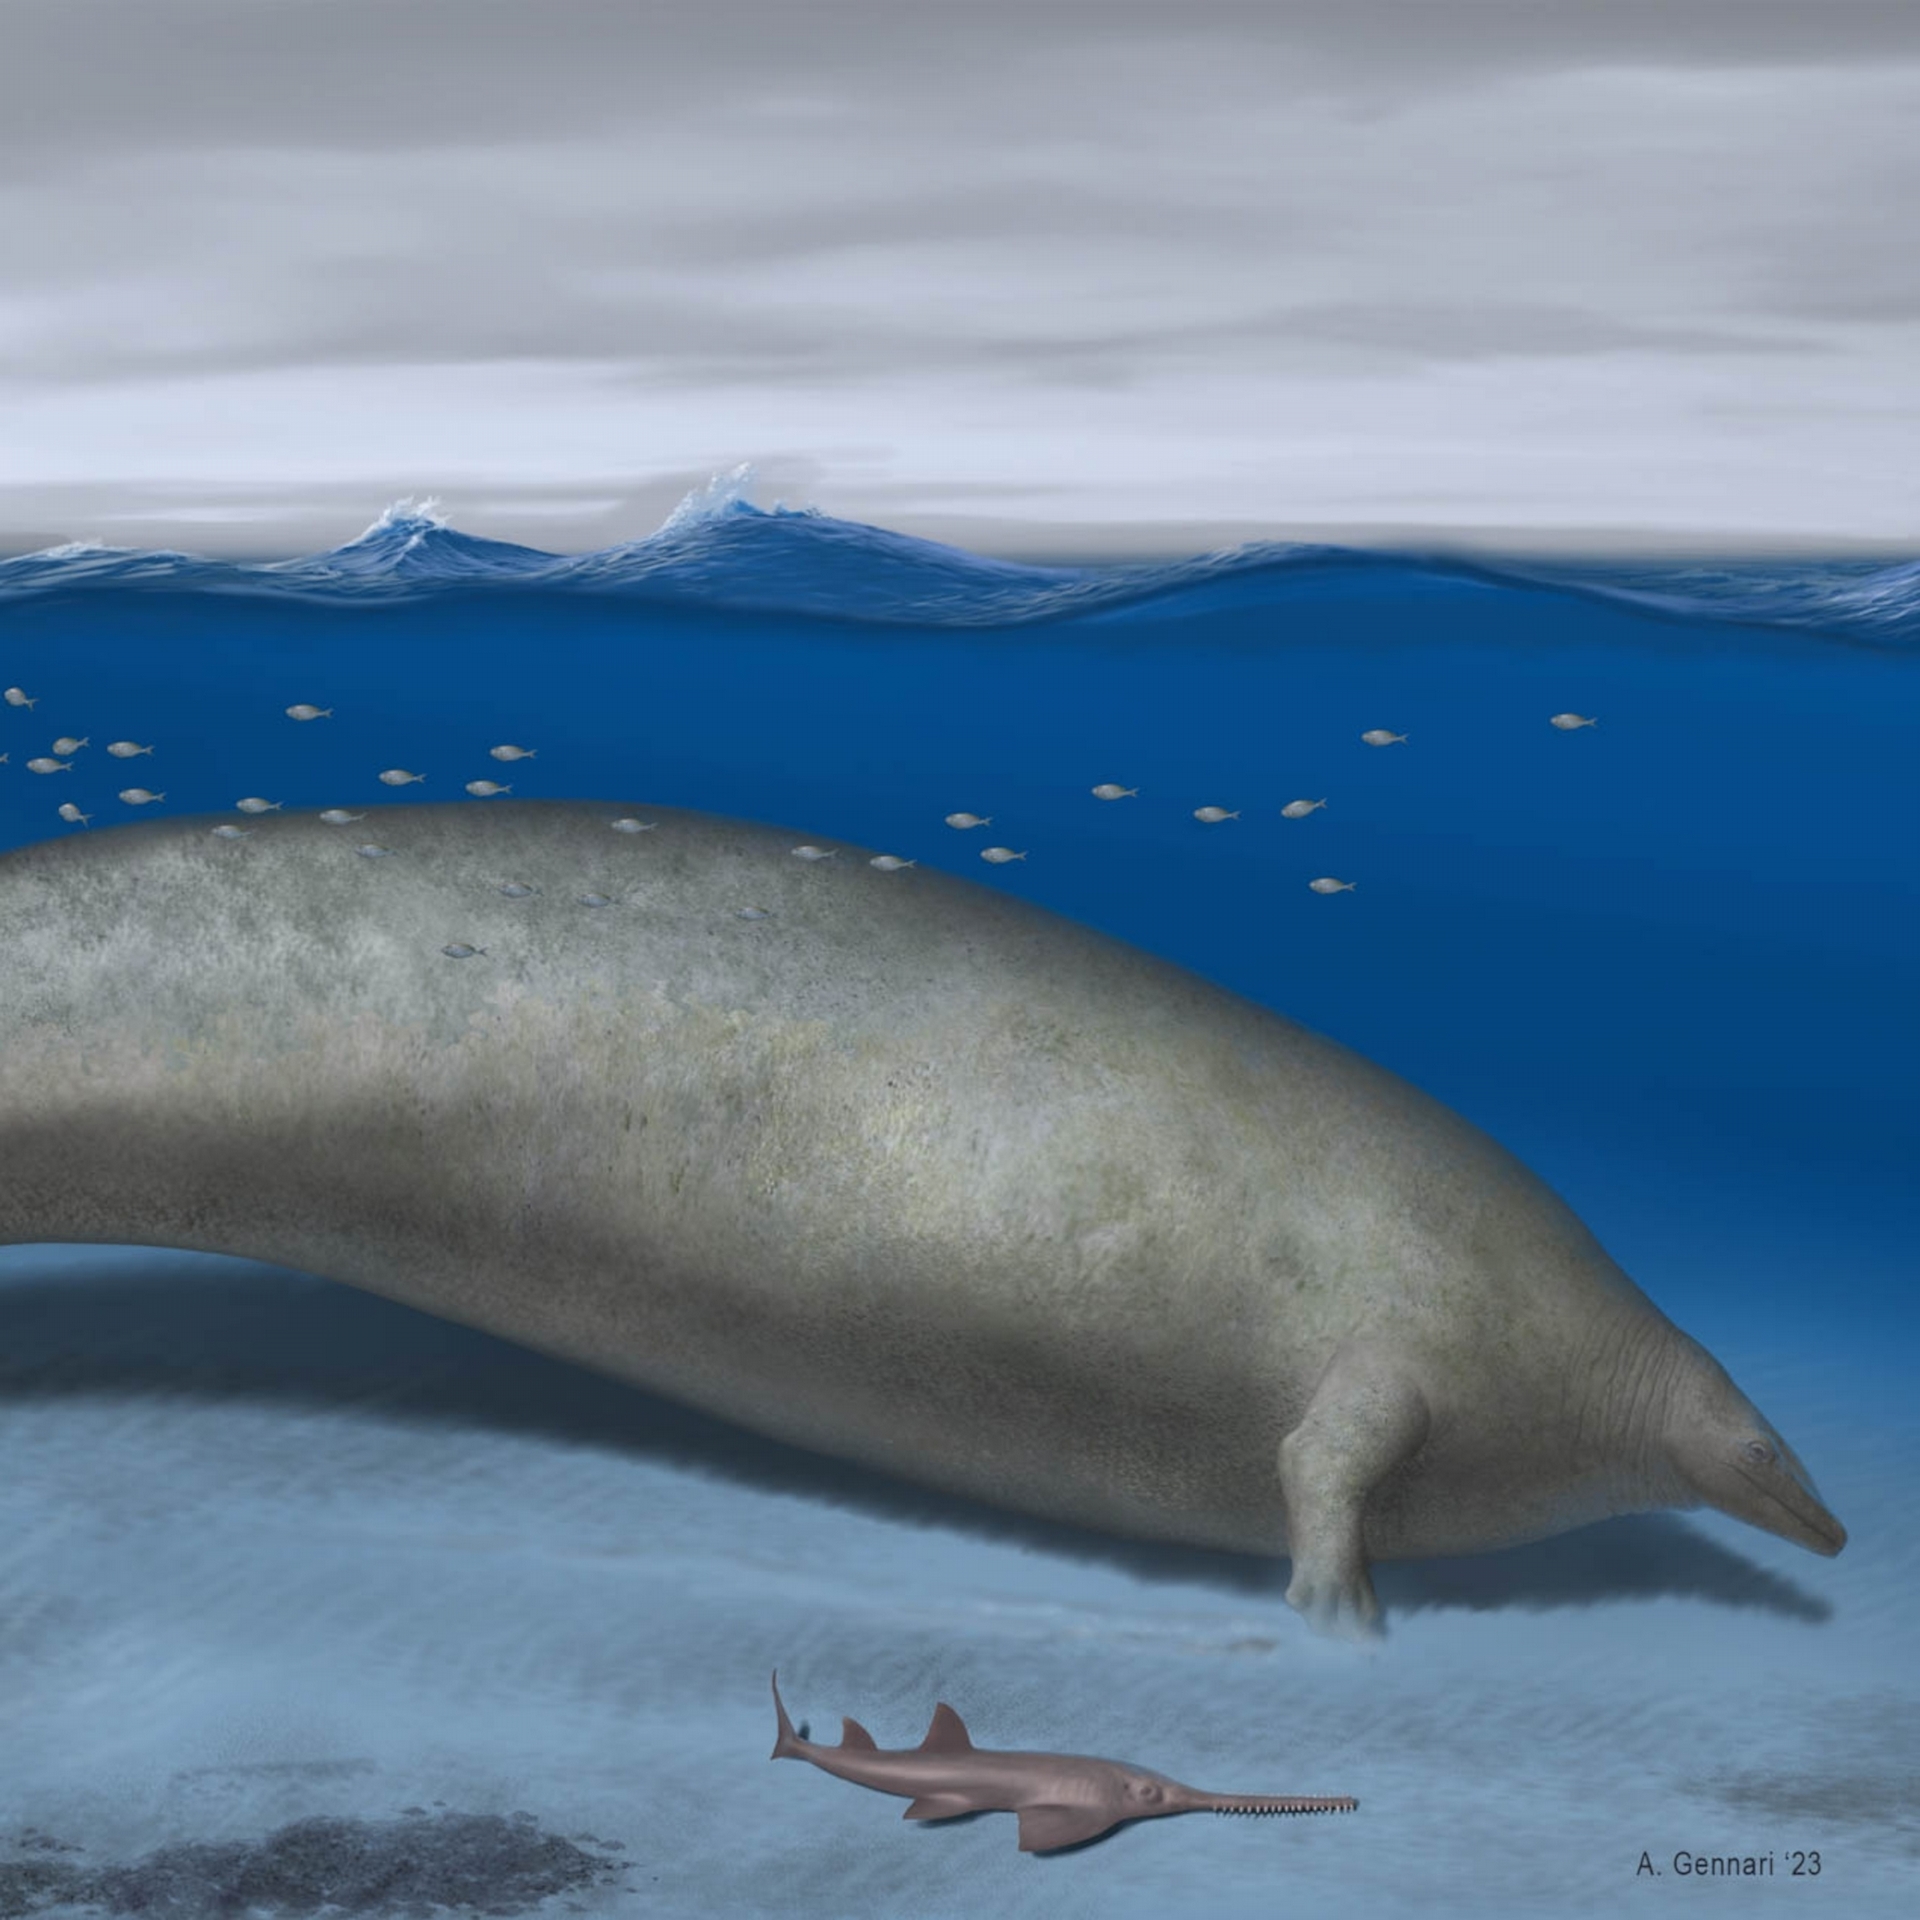 本圖描繪遠古鯨魚巨像秘魯鯨在沿海棲地活動。ILLUSTRATION BY ALBERTO GENNARI